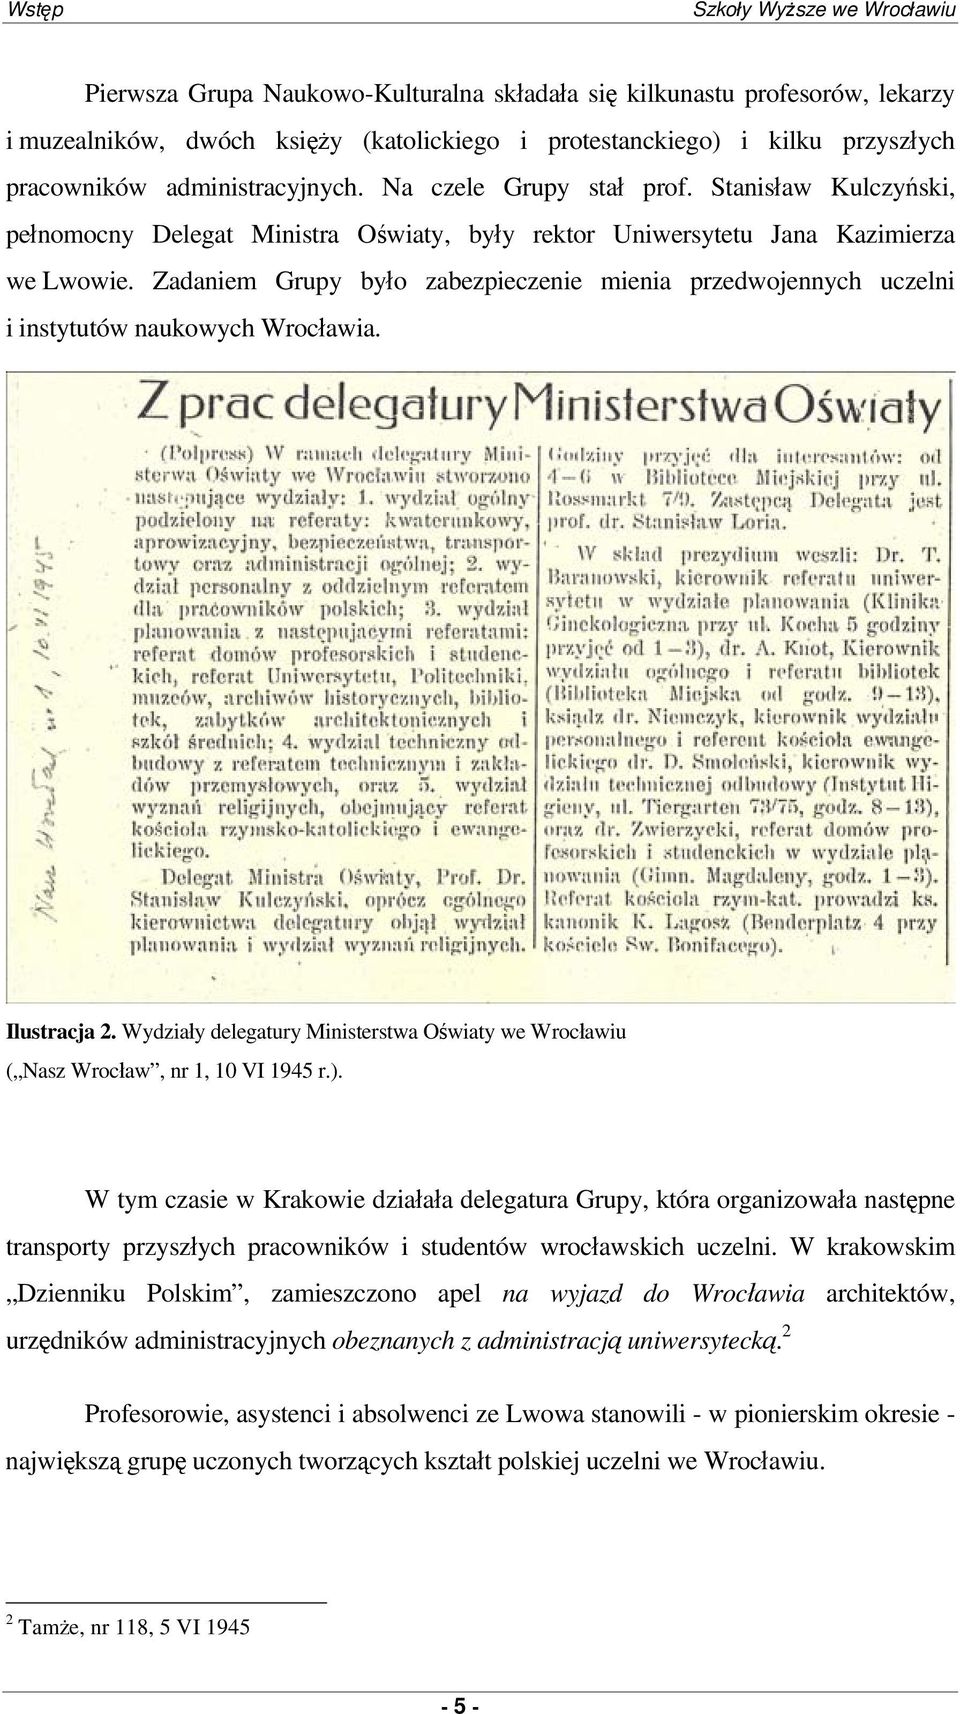 Zadaniem Grupy było zabezpieczenie mienia przedwojennych uczelni i instytutów naukowych Wrocławia. Ilustracja 2. y delegatury Ministerstwa Oświaty we Wrocławiu ( Nasz Wrocław, nr 1, 10 VI 1945 r.).